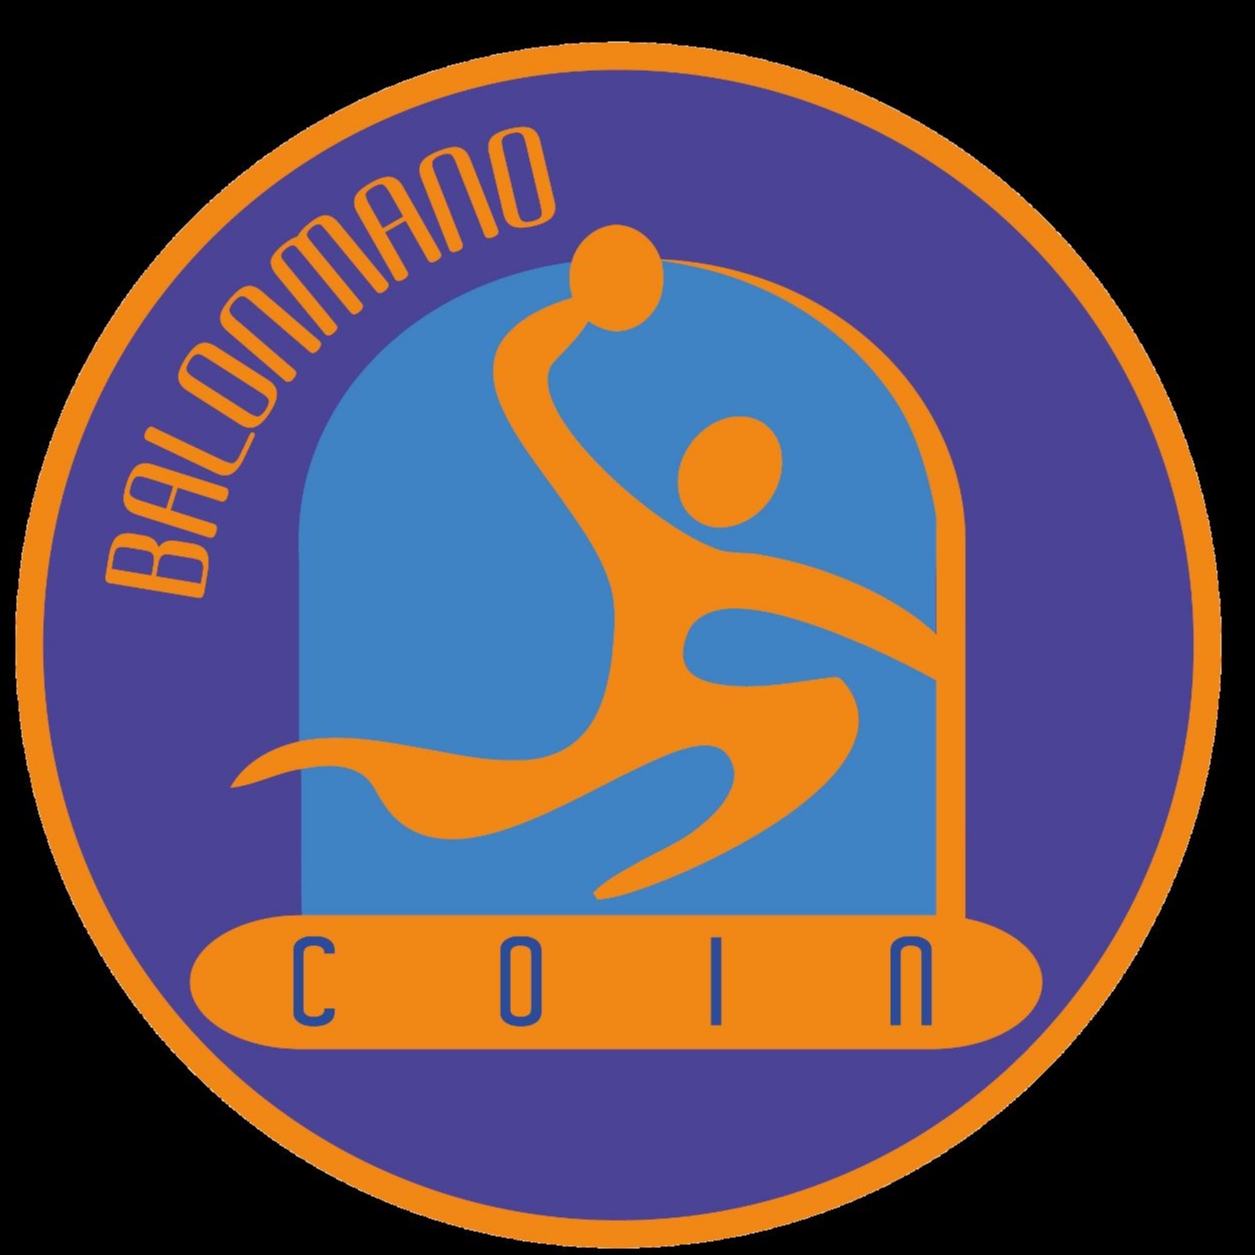 CLUB BALONMANO COIN